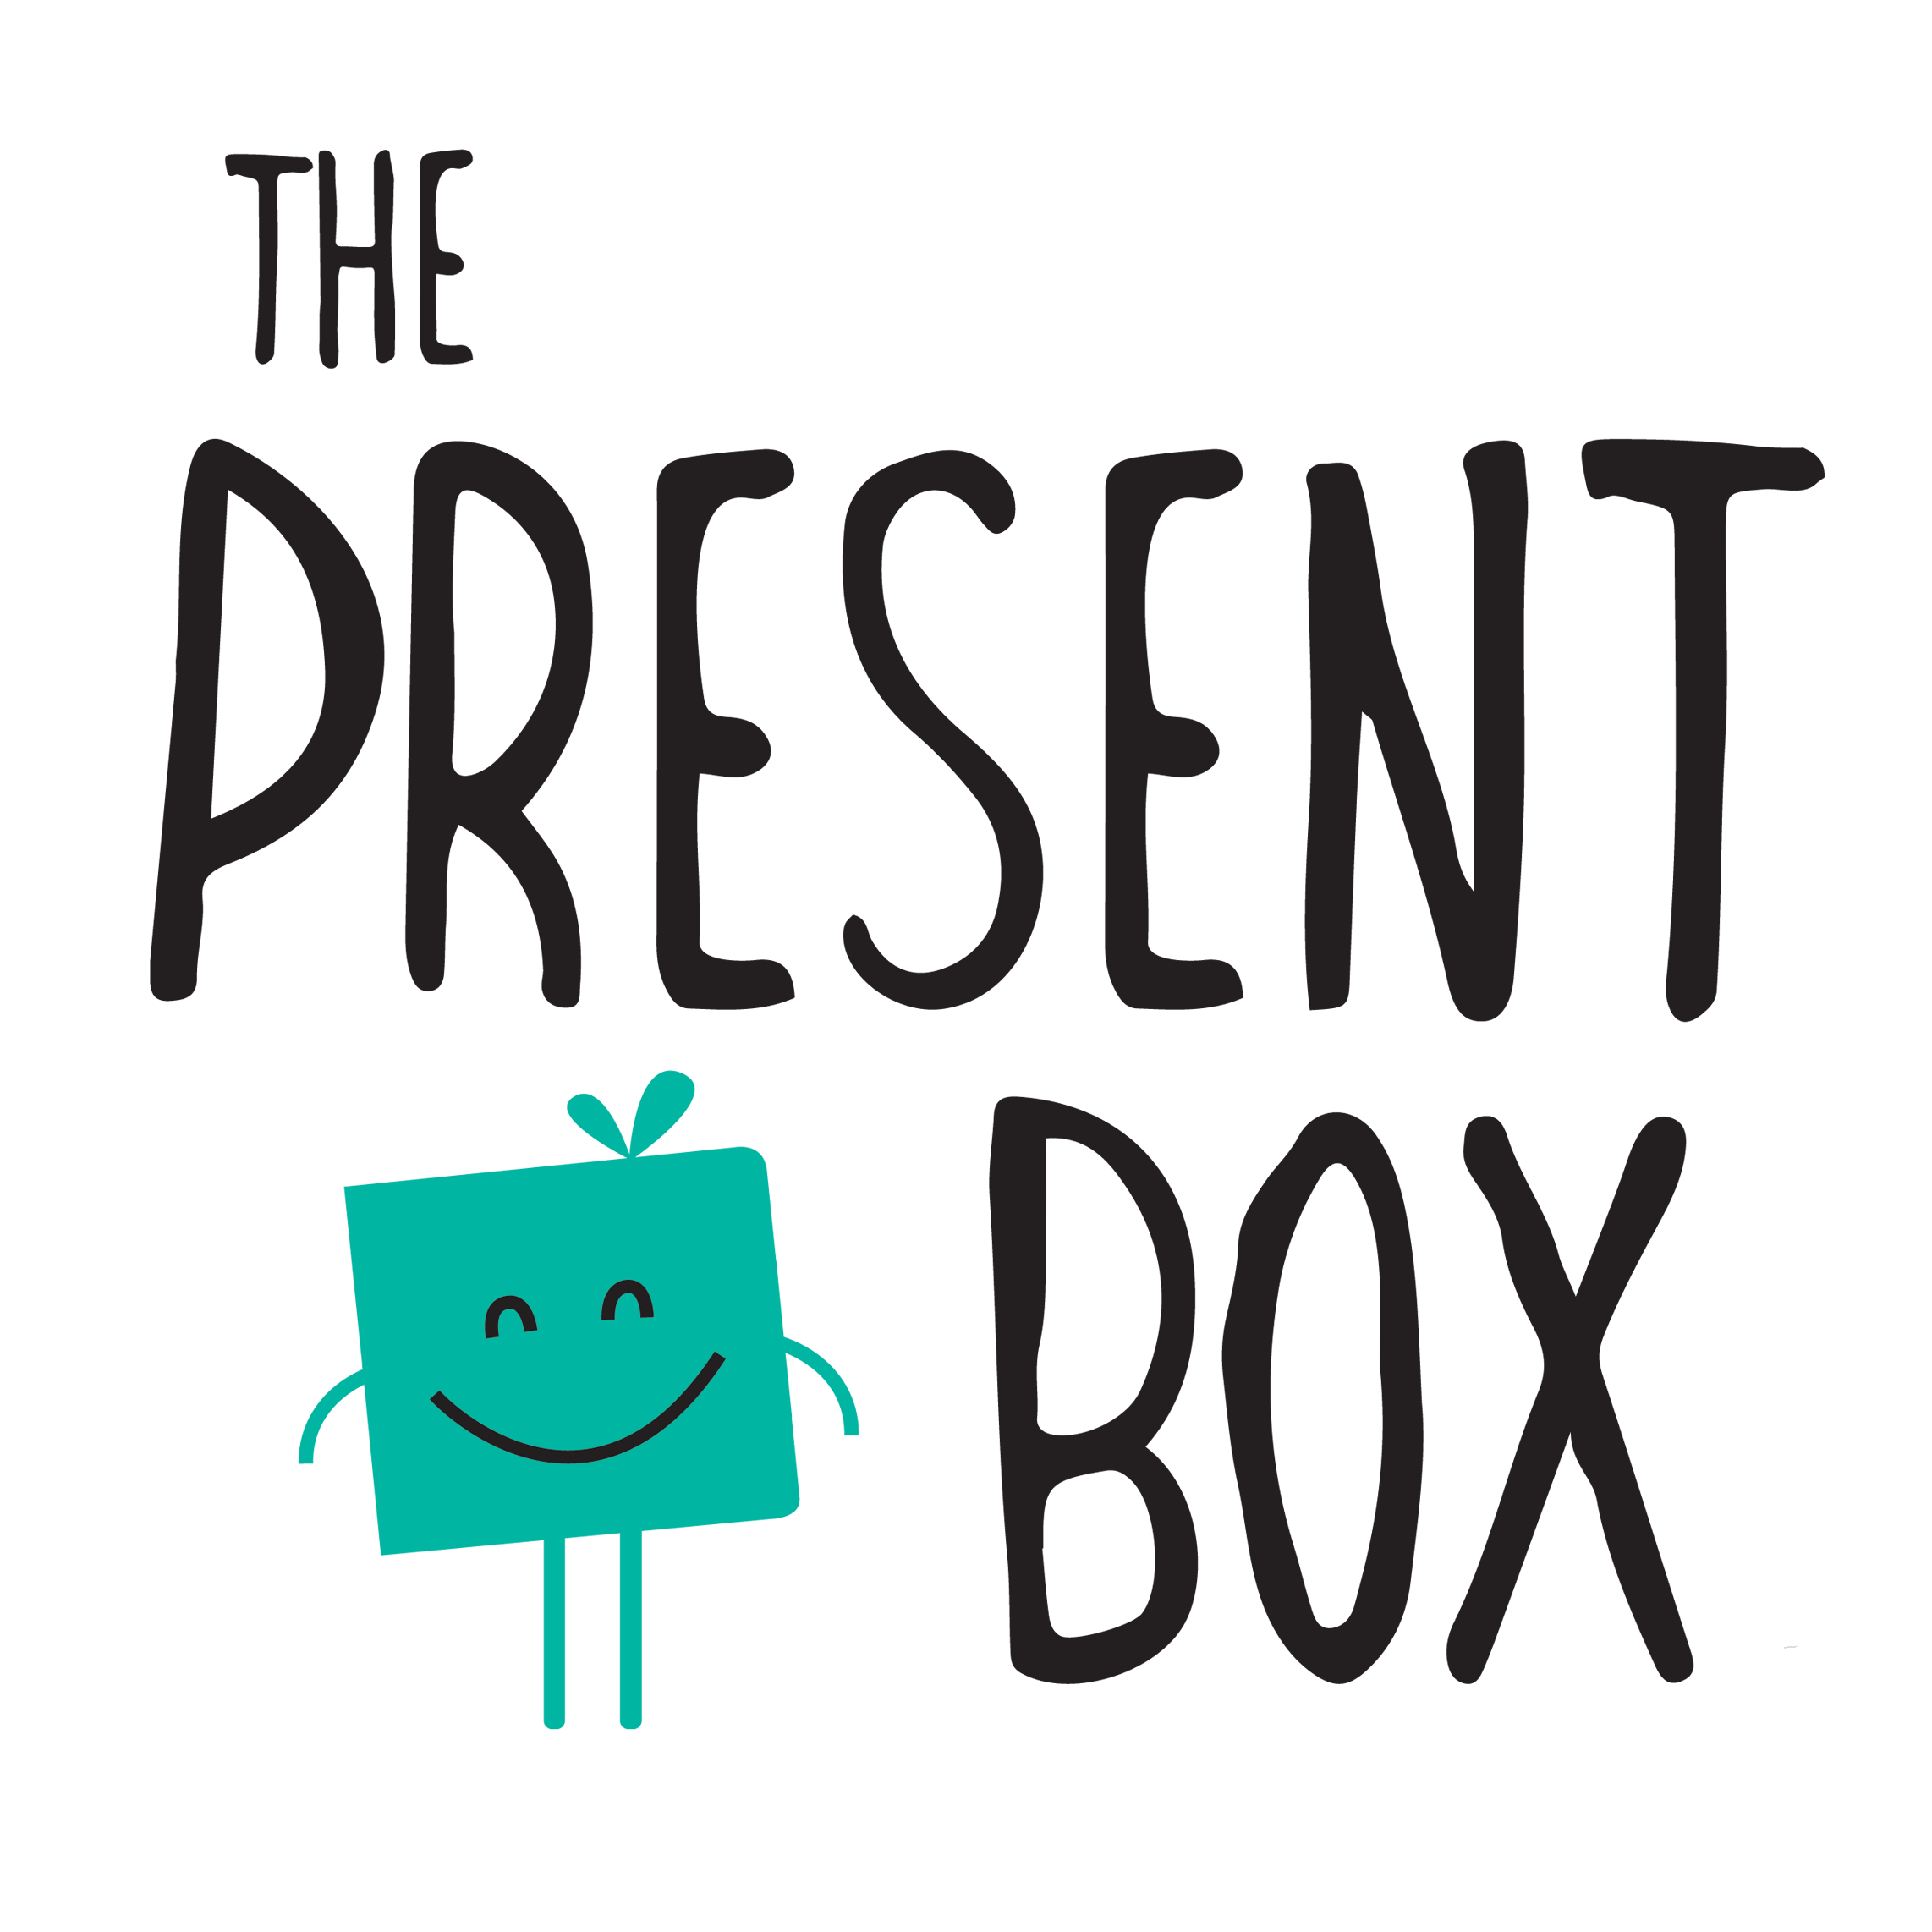 The Present Box